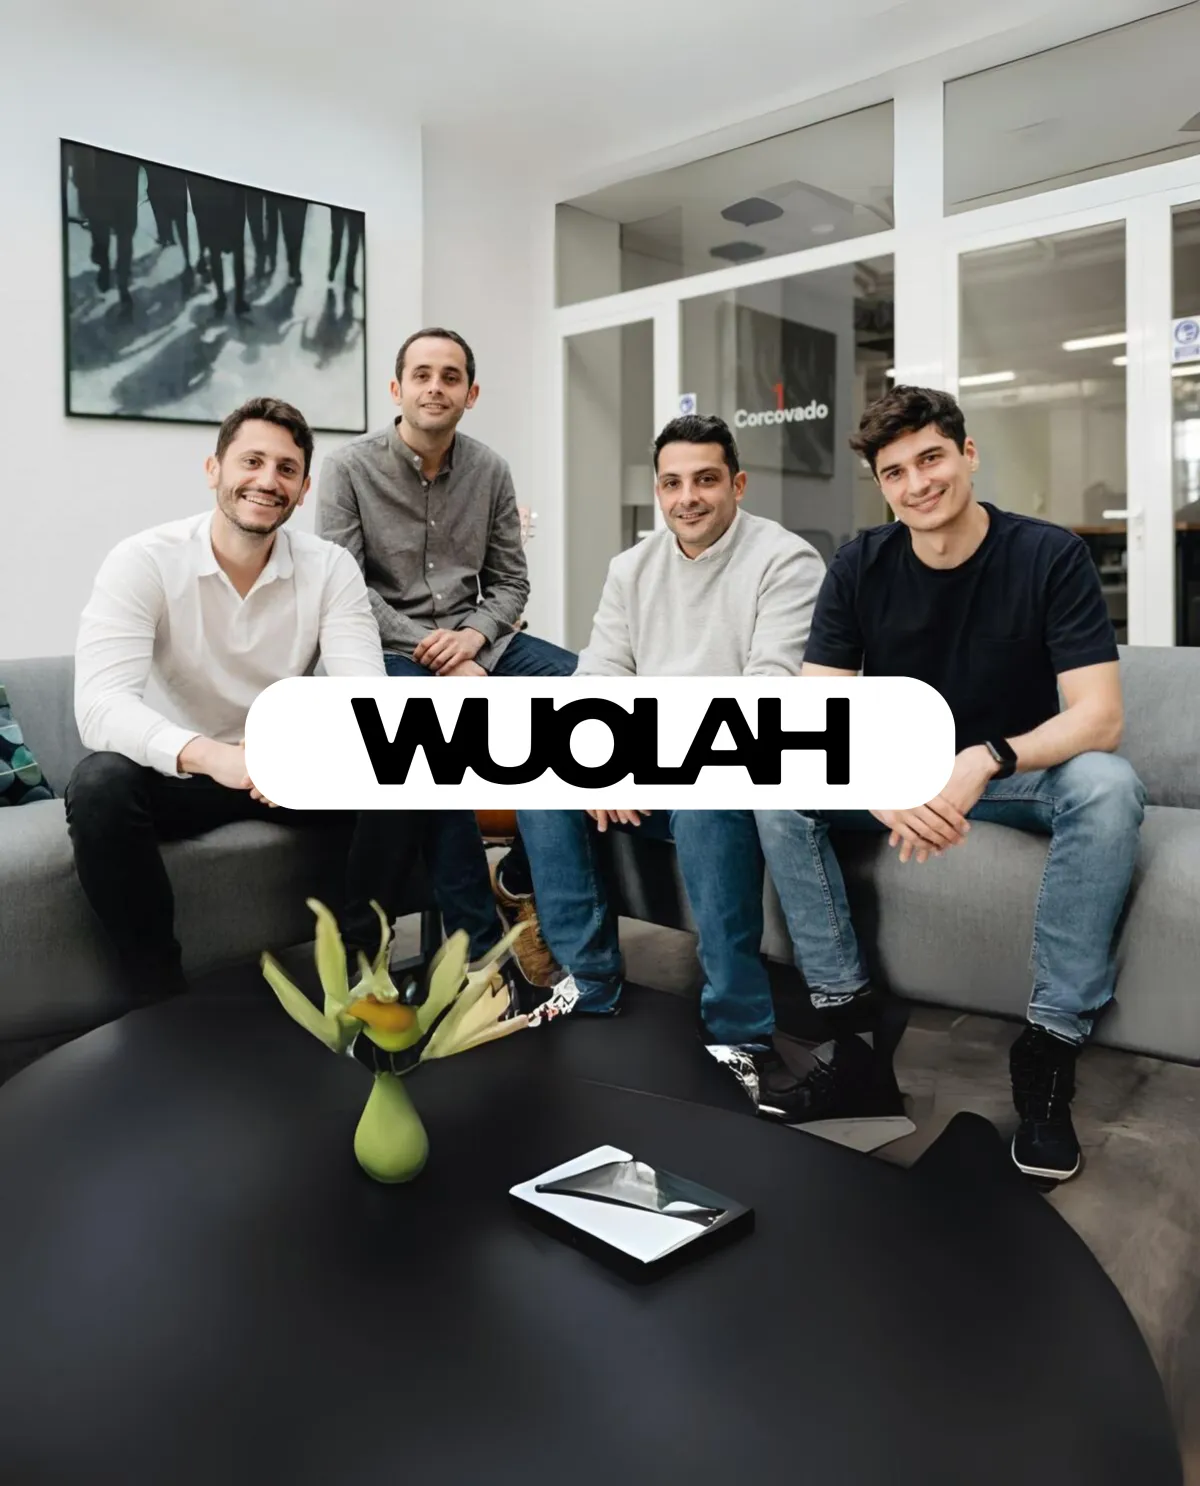 Cómo Wuolah gracias al marketing viral y de guerrilla consiguió sus primeros 1.000 usuarios y su crecimiento exponencial